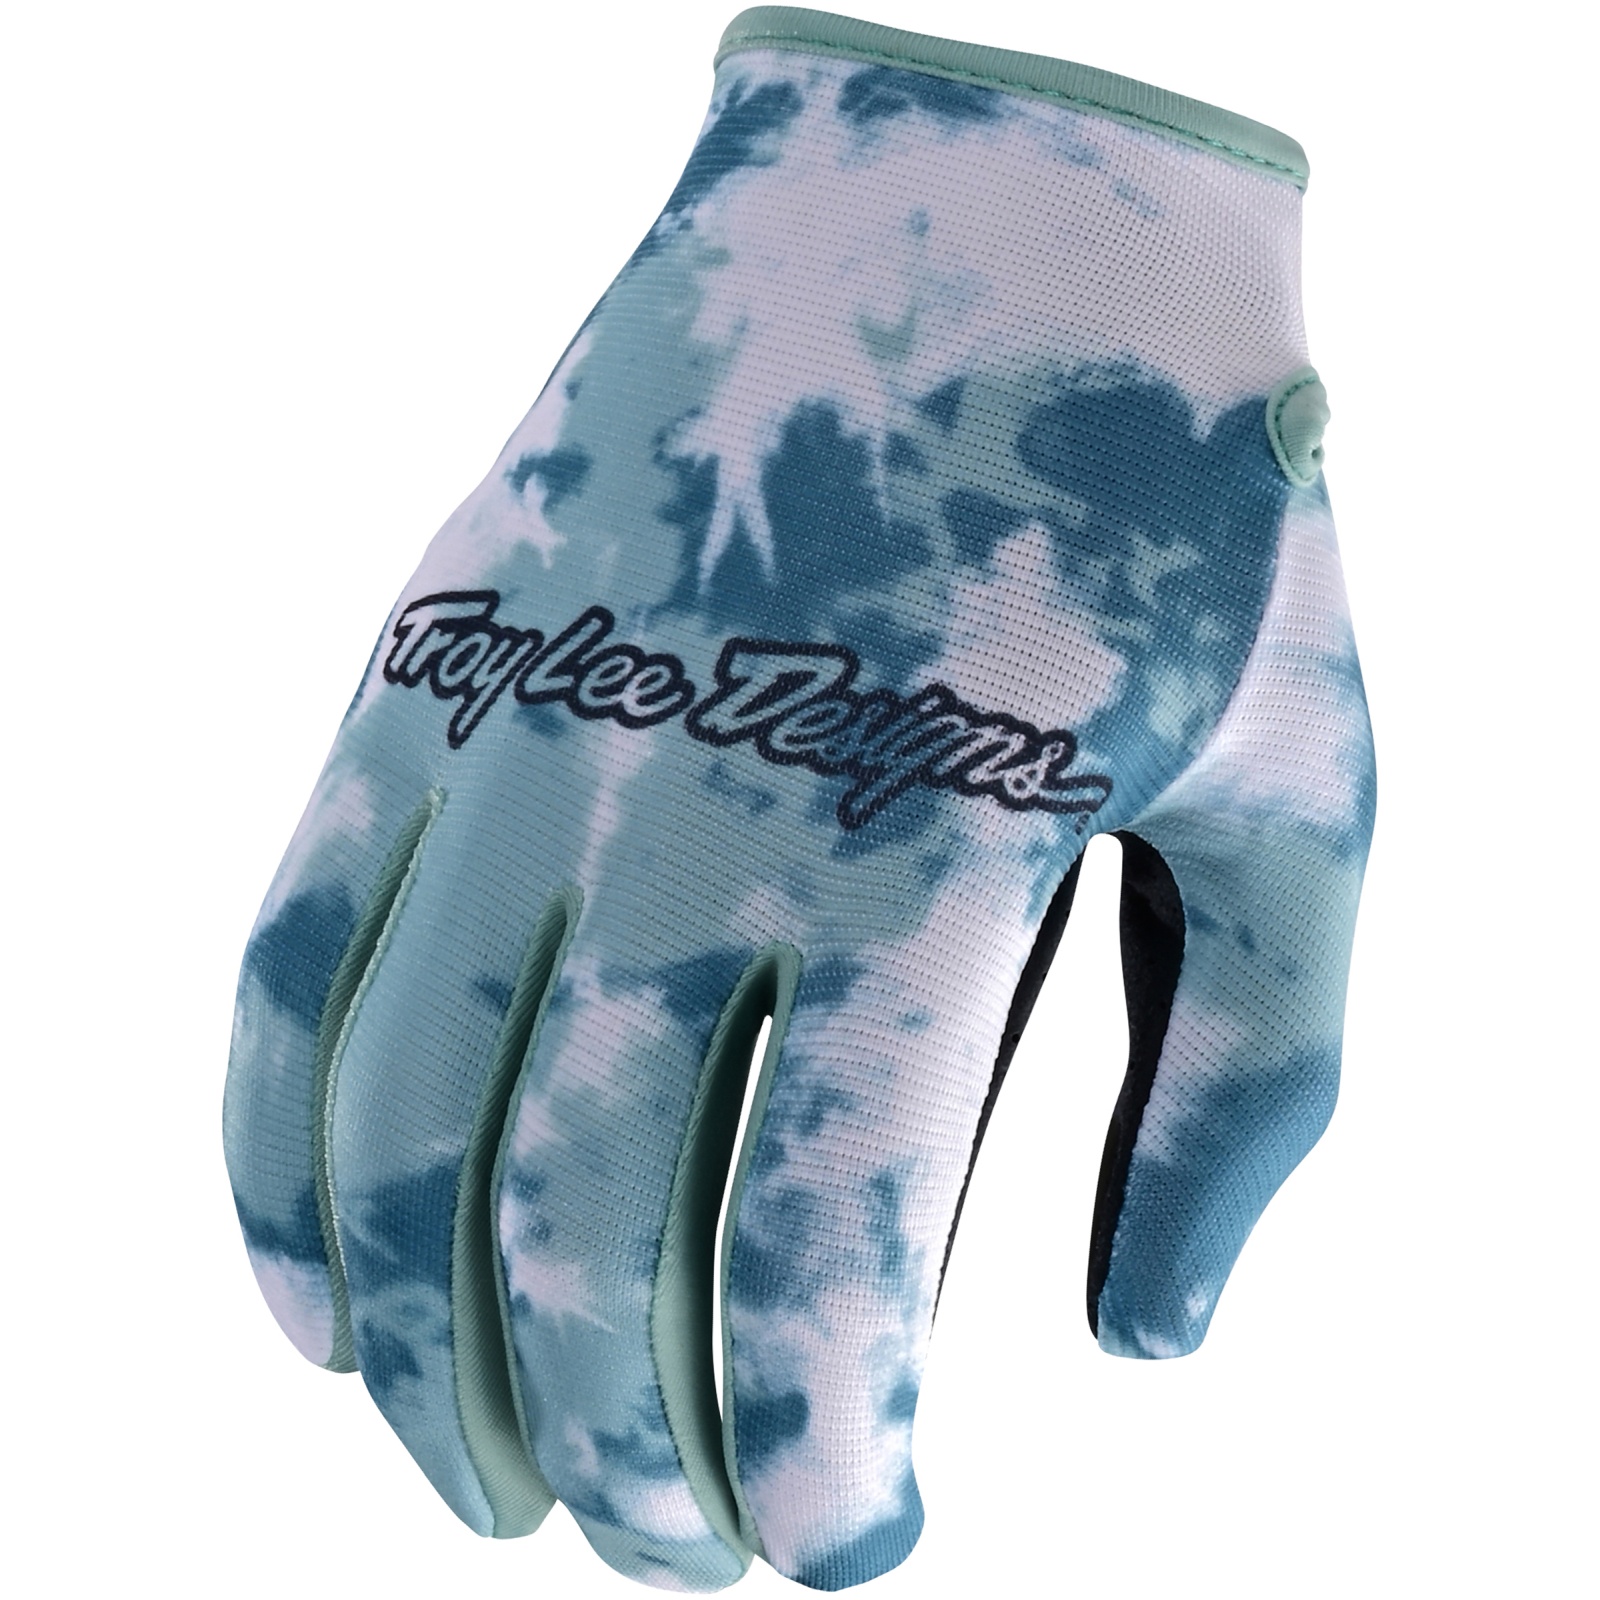 Productfoto van Troy Lee Designs Flowline Handschoenen - Plot Blue Haze